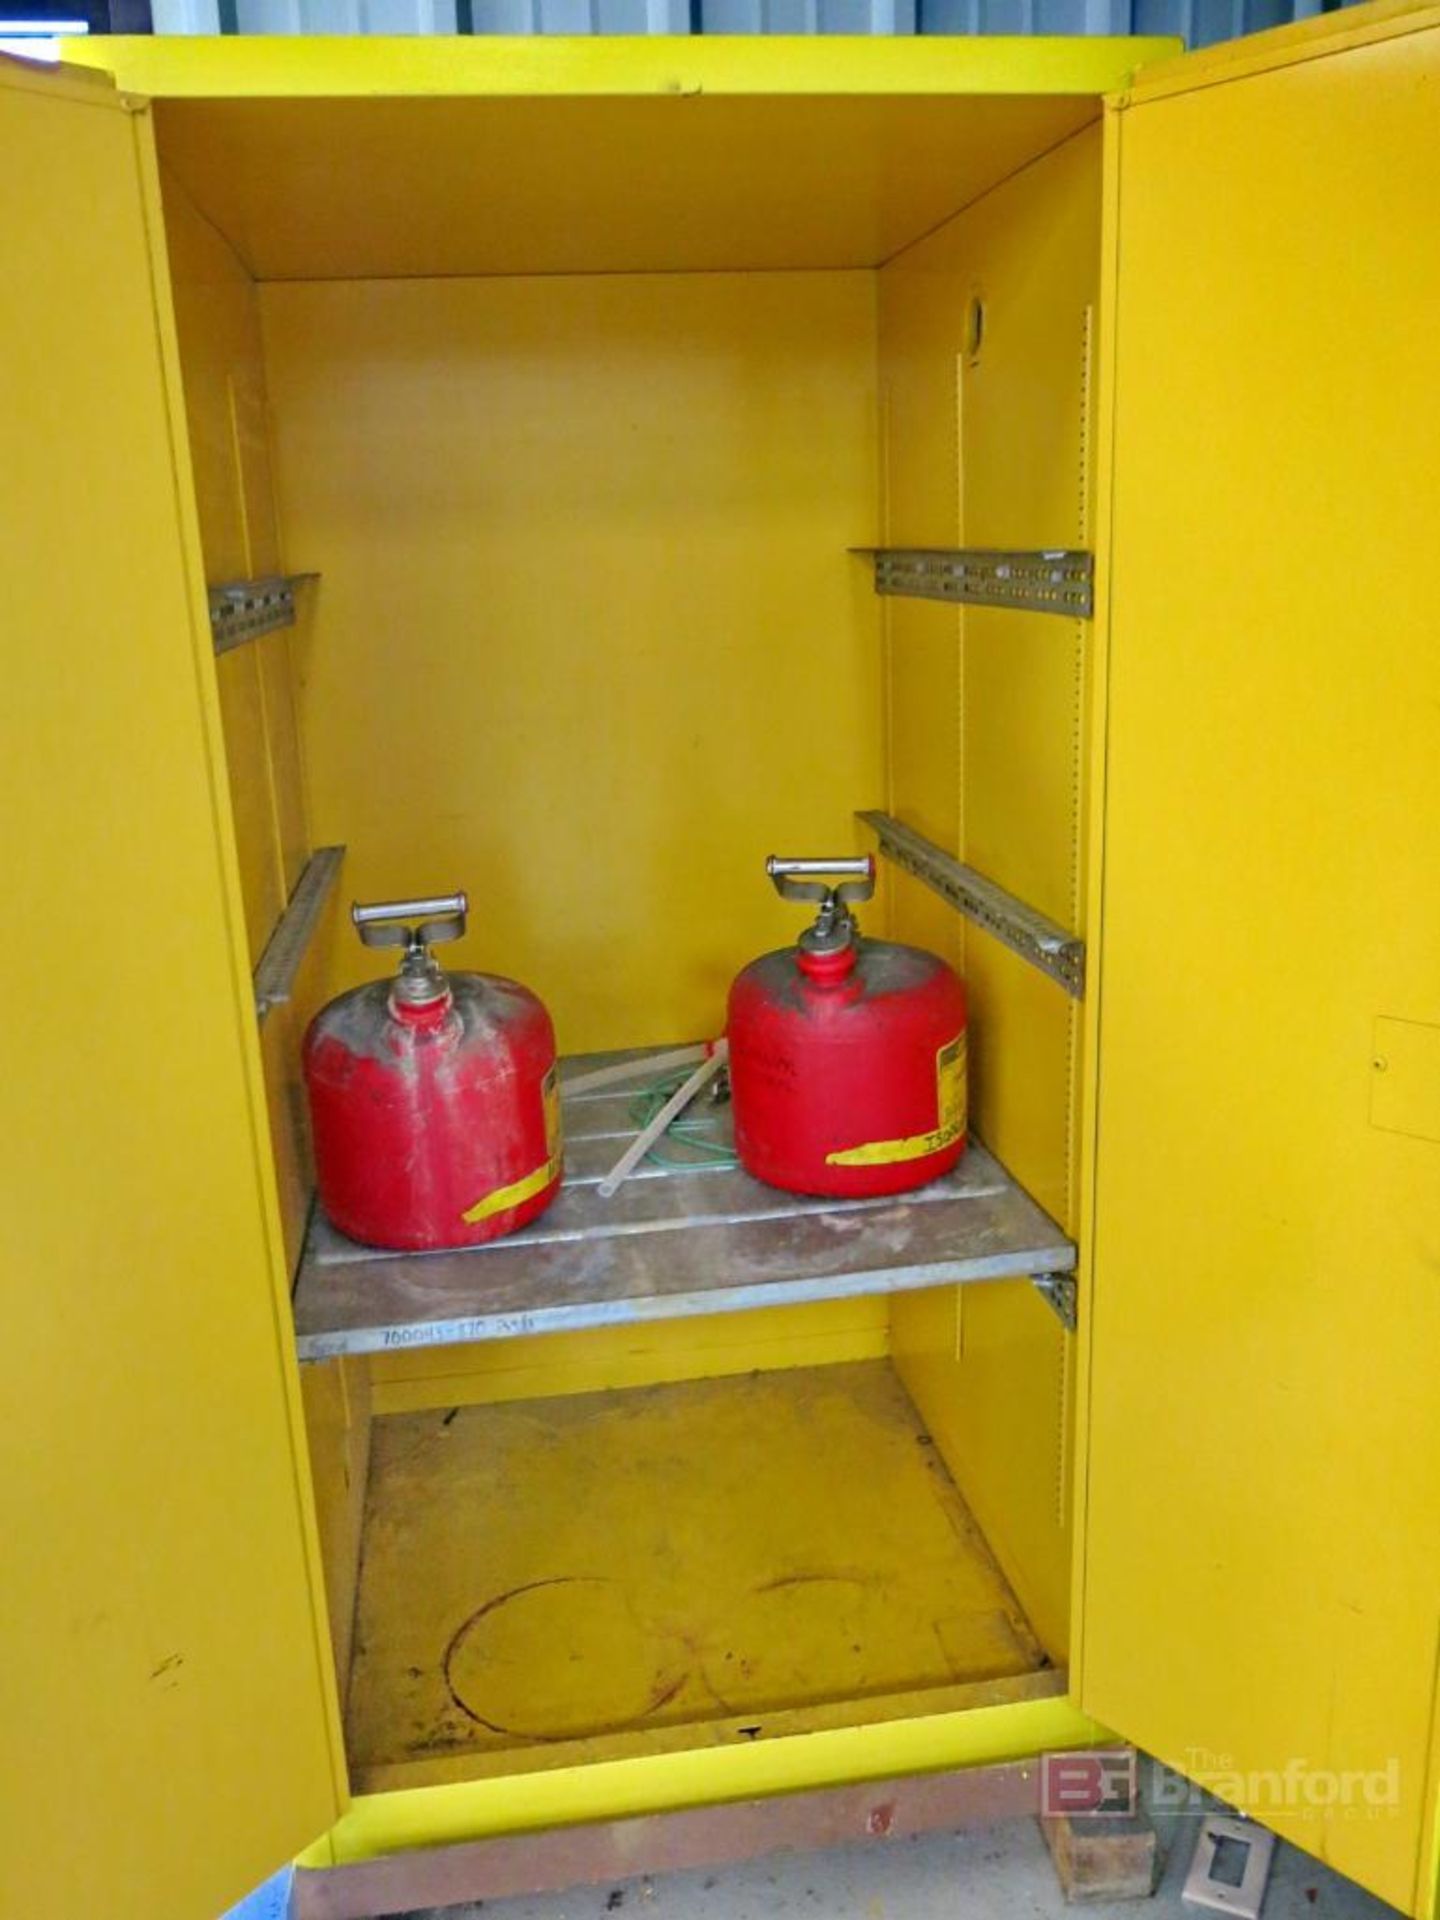 2-Door Flammable Liquid Storage Cabinet - Bild 2 aus 2